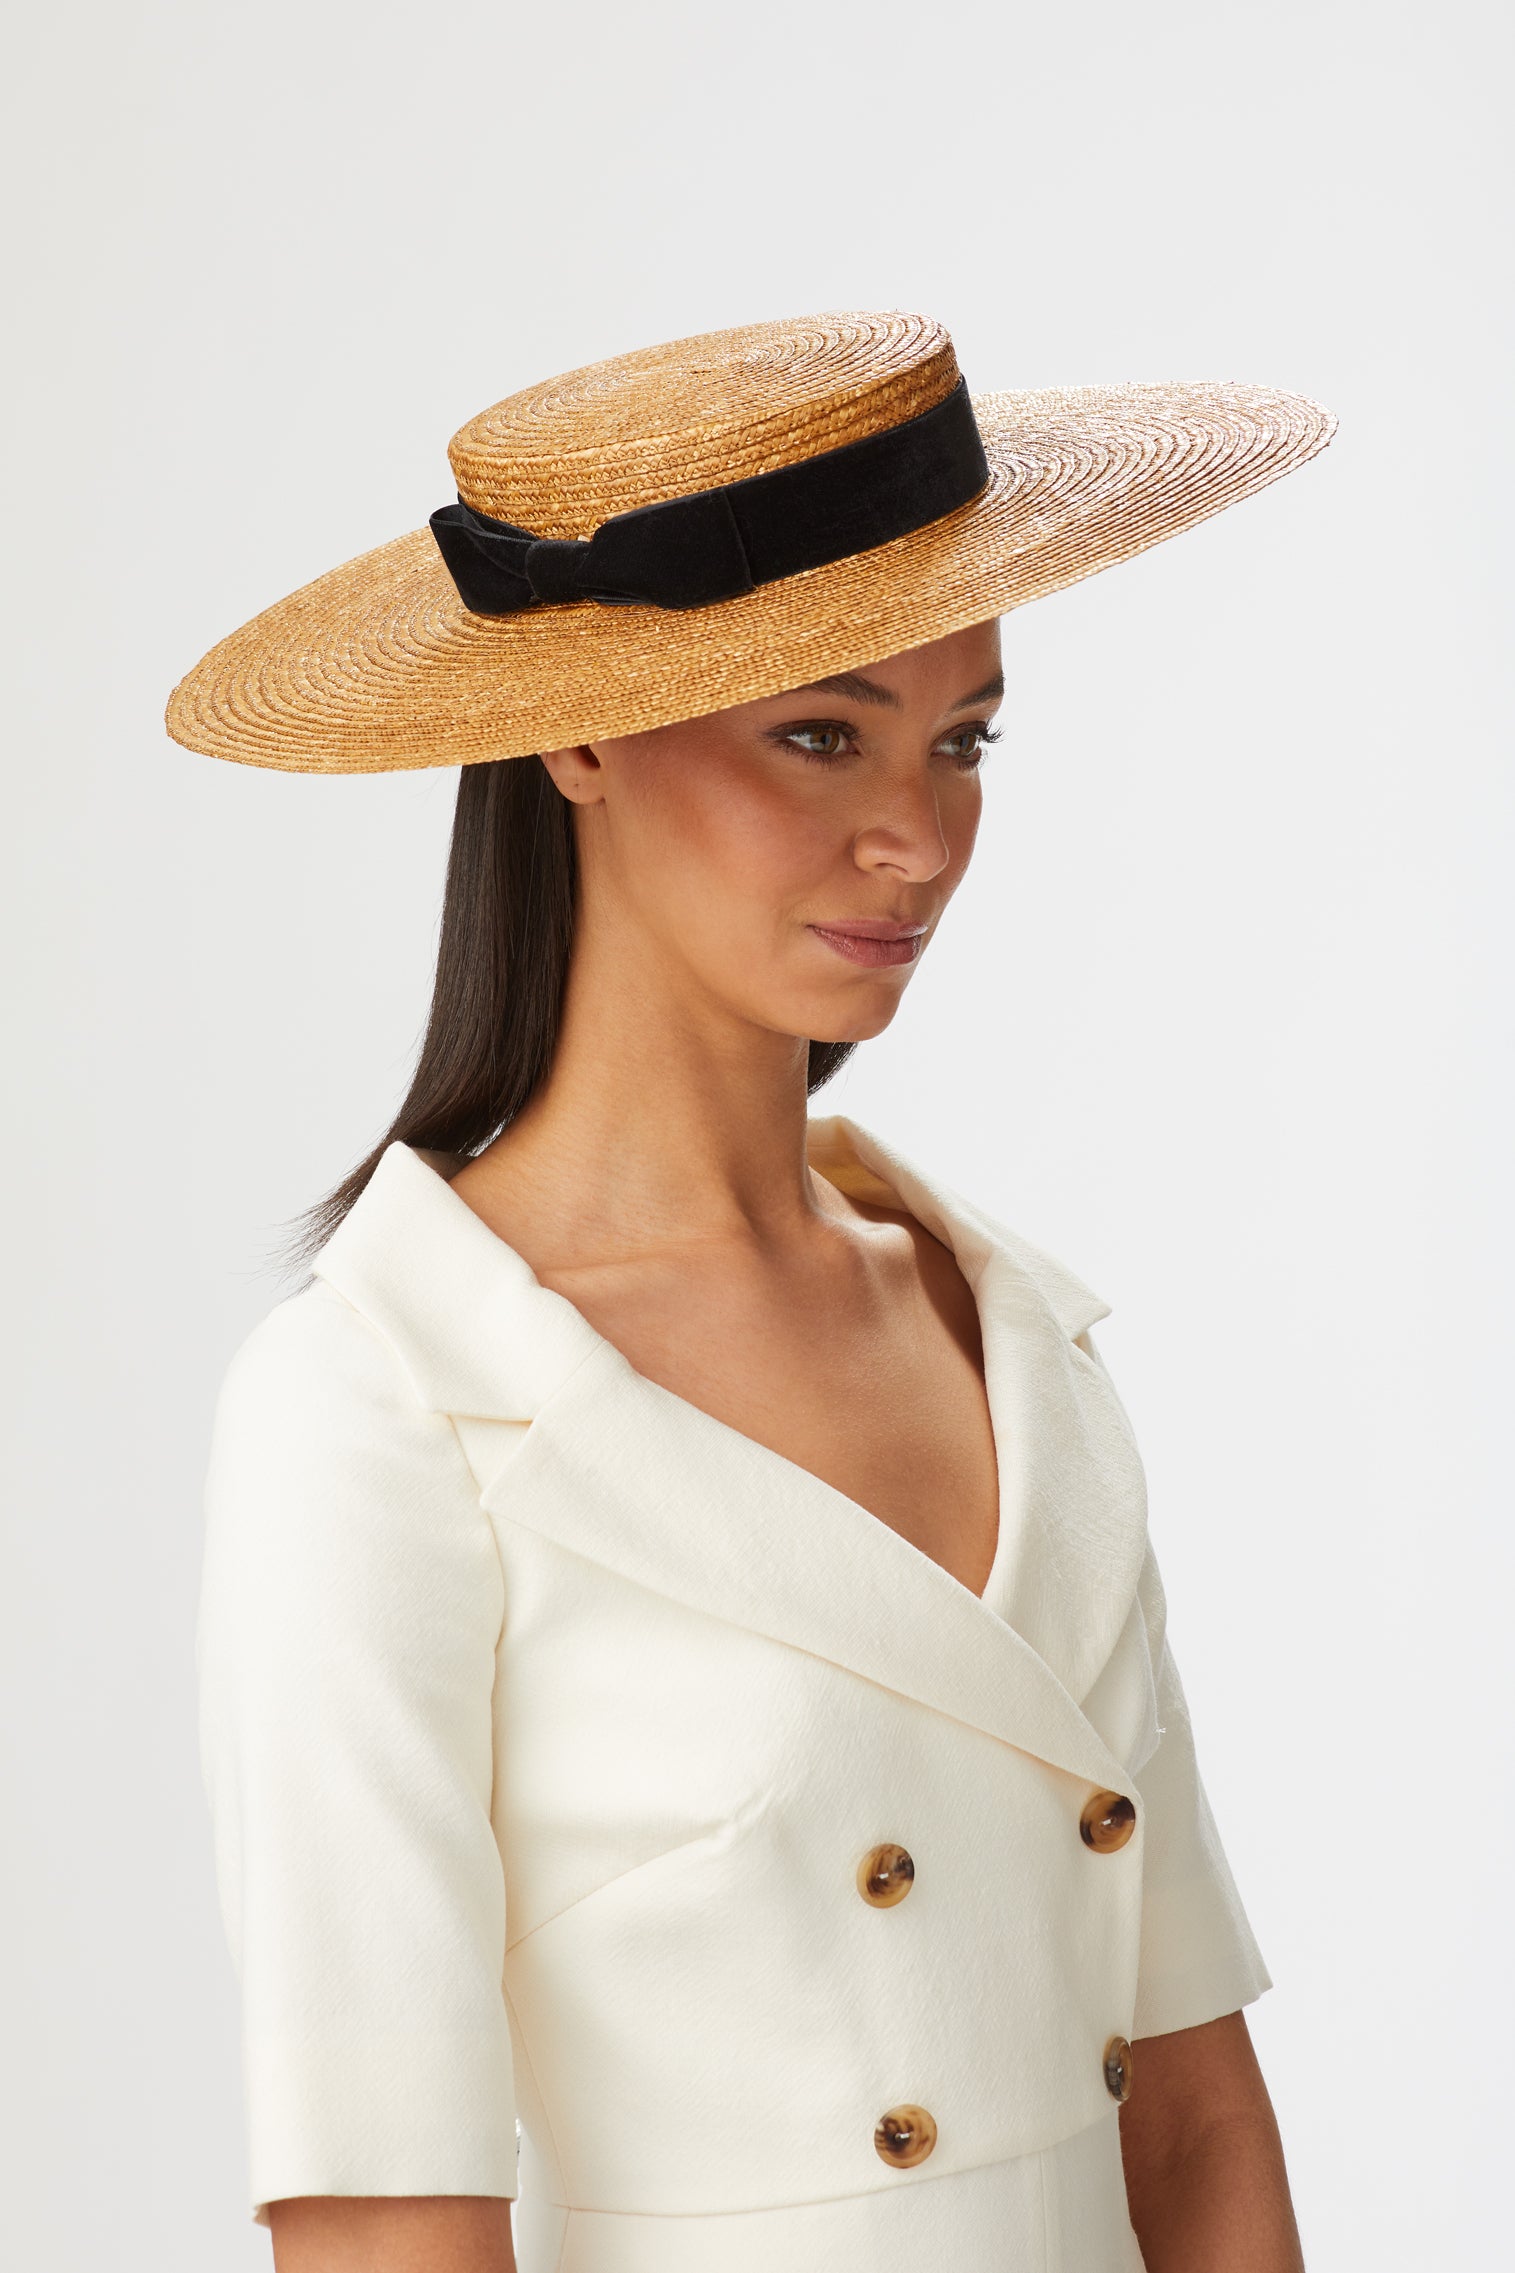 Branka Boater - Women’s Hats - Lock & Co. Hatters London UK